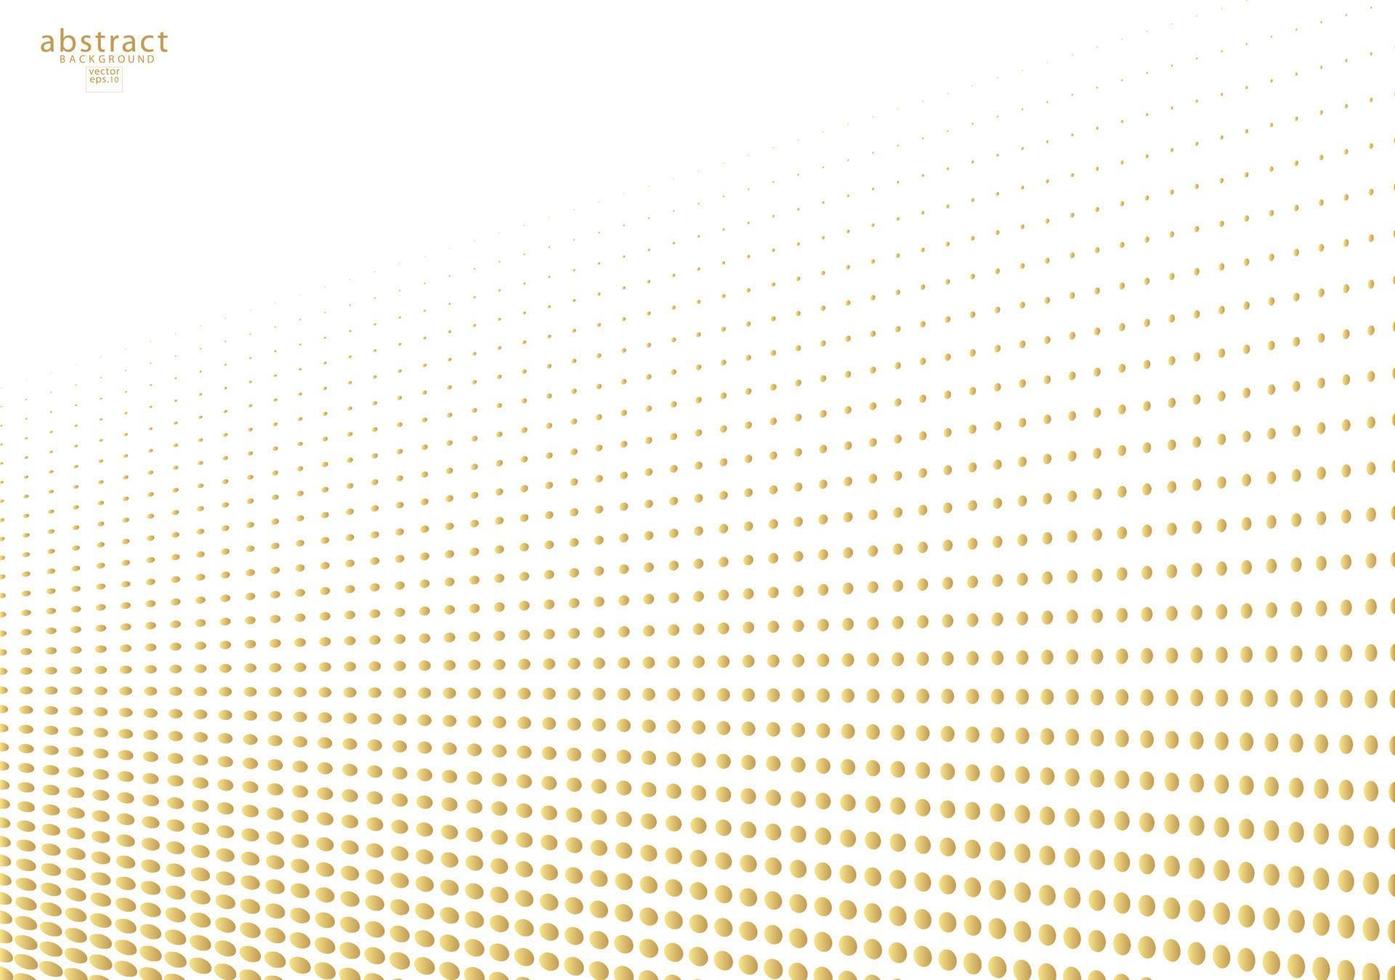 abstrakt halvton guld prickad bakgrund. futuristisk grunge mönster, prick, våg. vektor modern optisk popkonststruktur för affischer, webbplatser, visitkort, omslag, etikettmodell, vintage layout